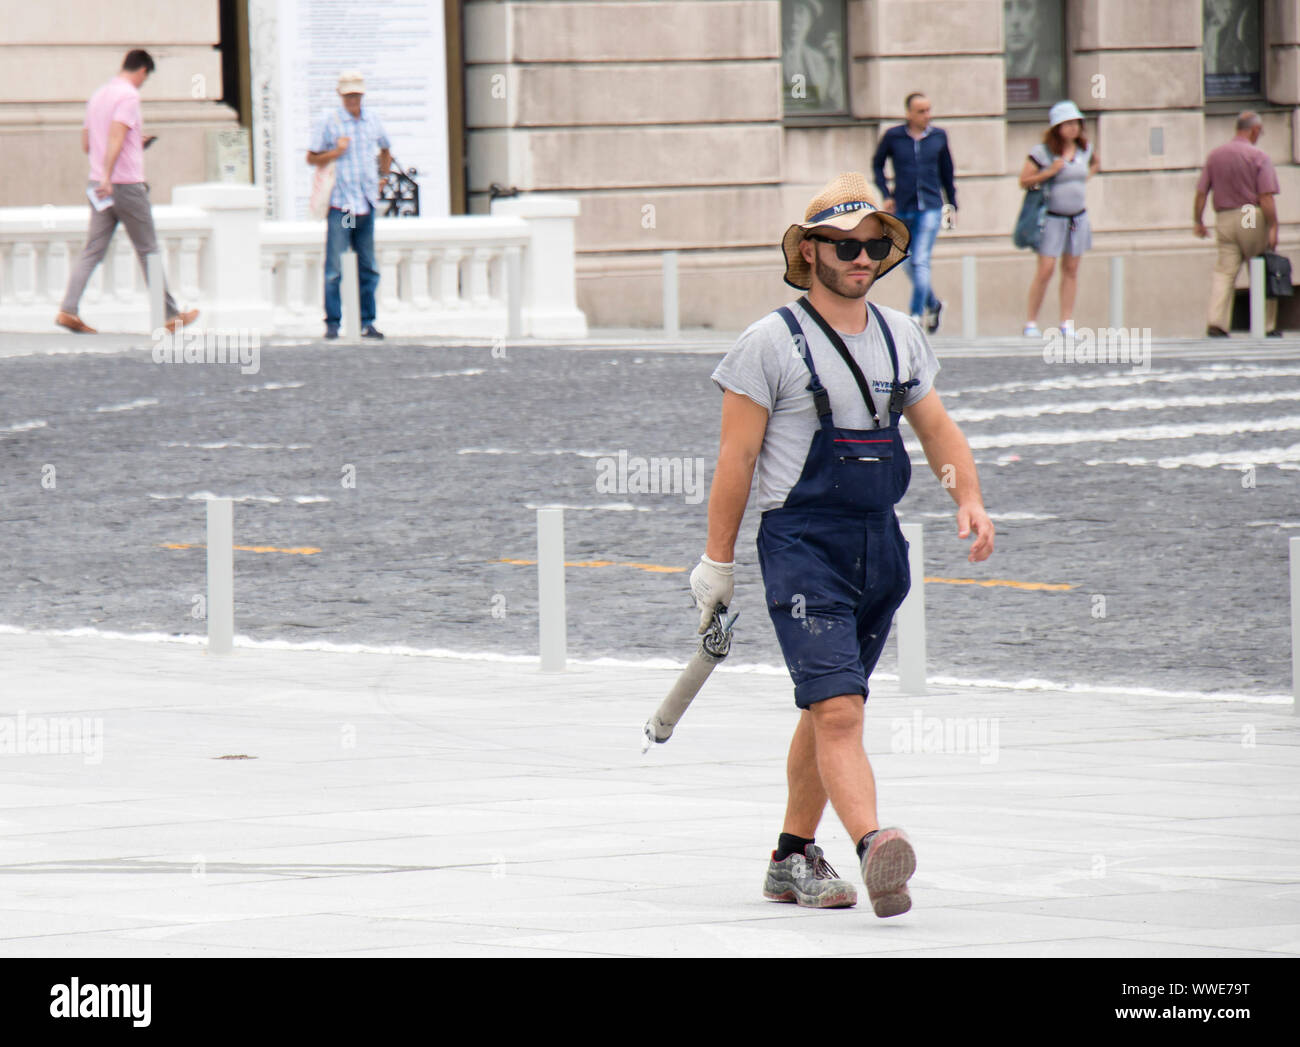 Belgrad, Serbien - 3. September 2019: Junge und schöne Bauarbeiter in lässigen Sommer-outfit auf Stadt Pflaster mit einer Kartuschenpistole Stockfoto